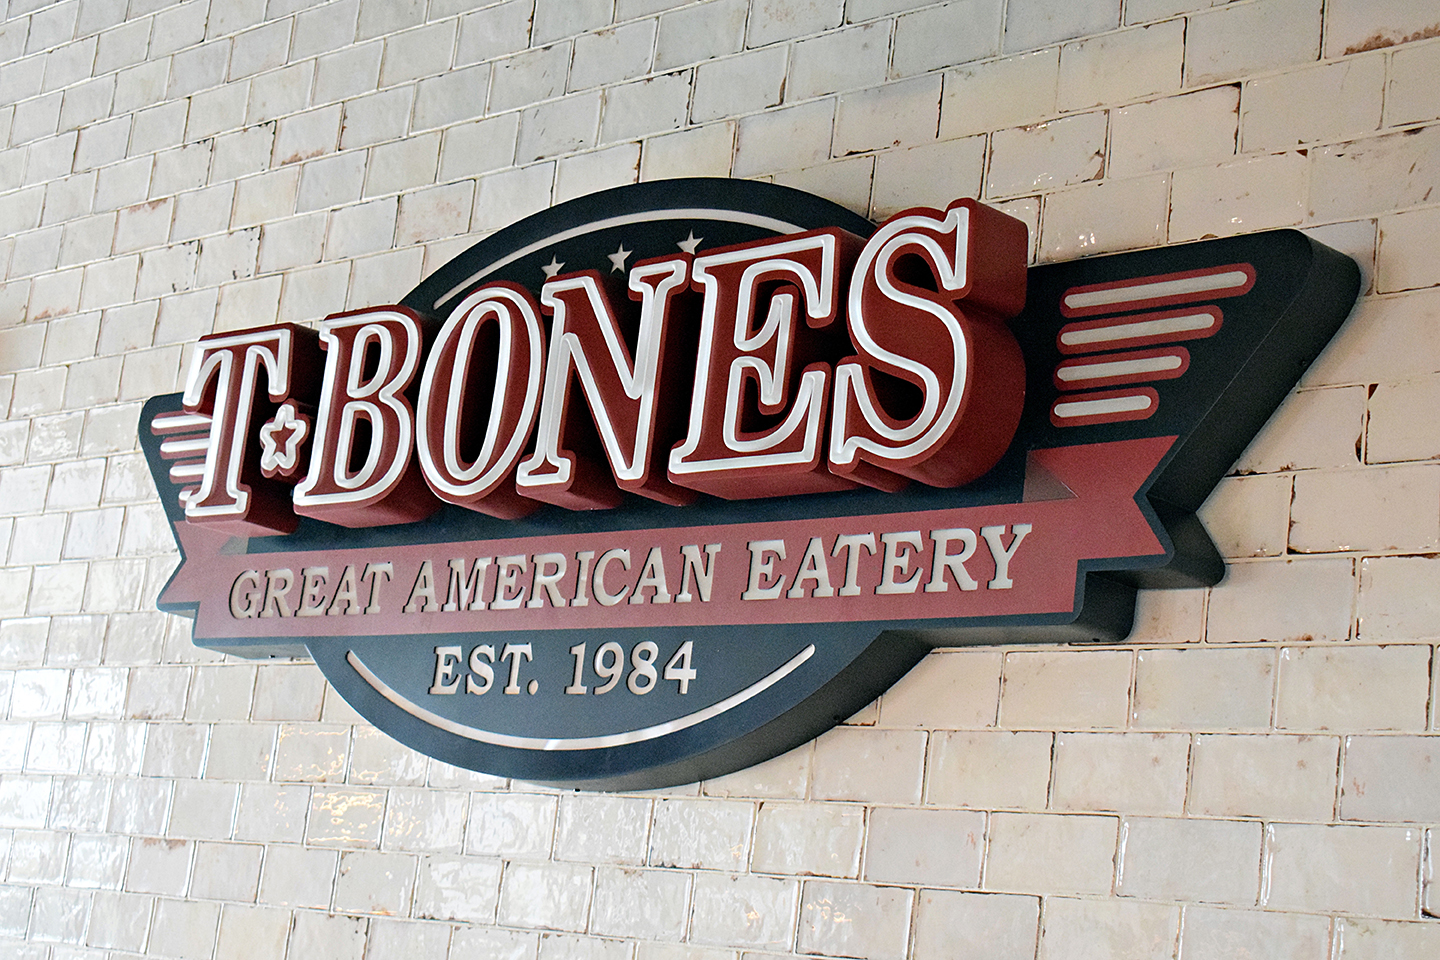 T-BONES Restaurant